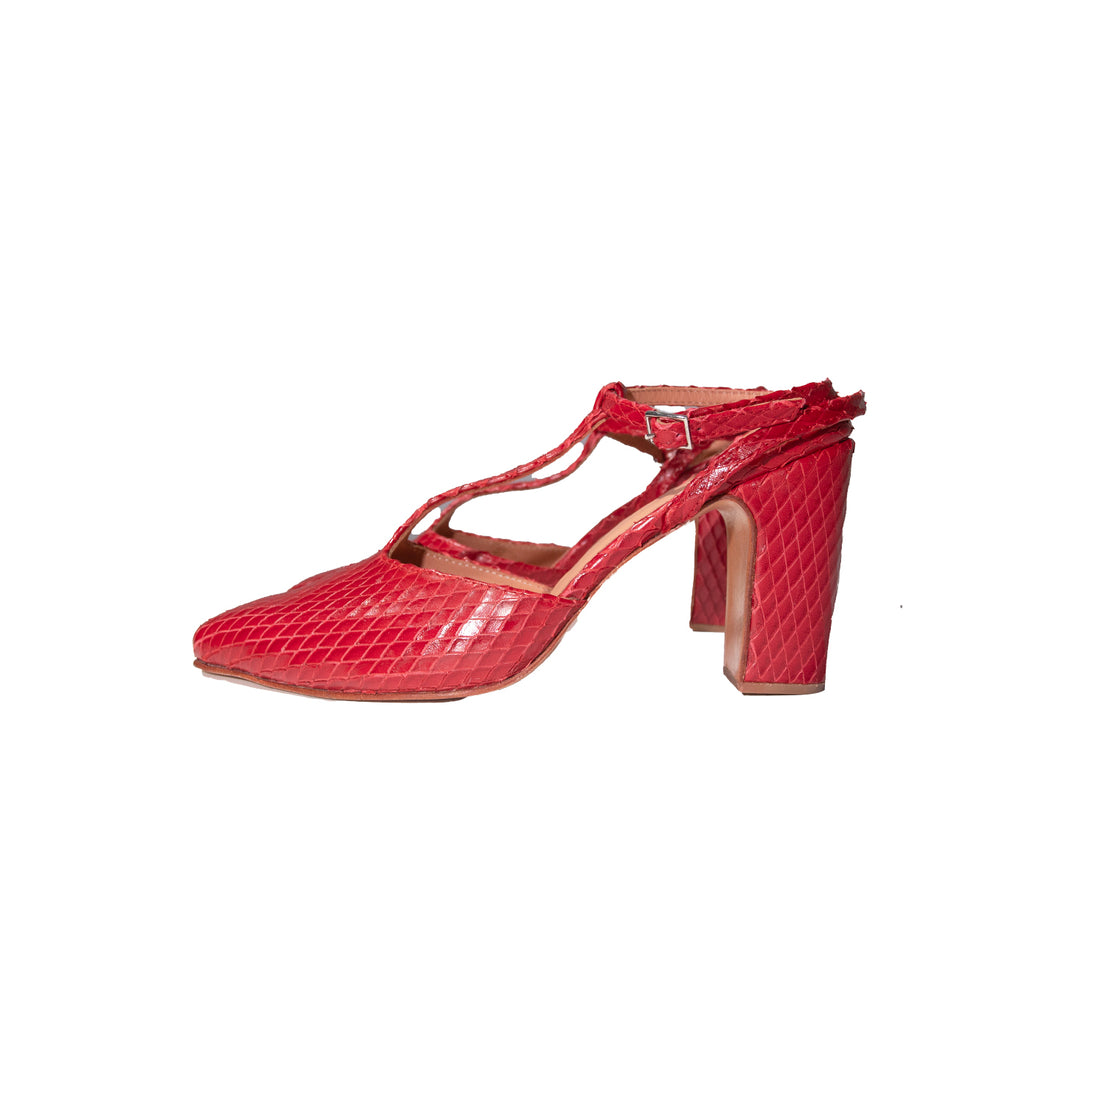 Rachel Comey Daemon Heel in Red